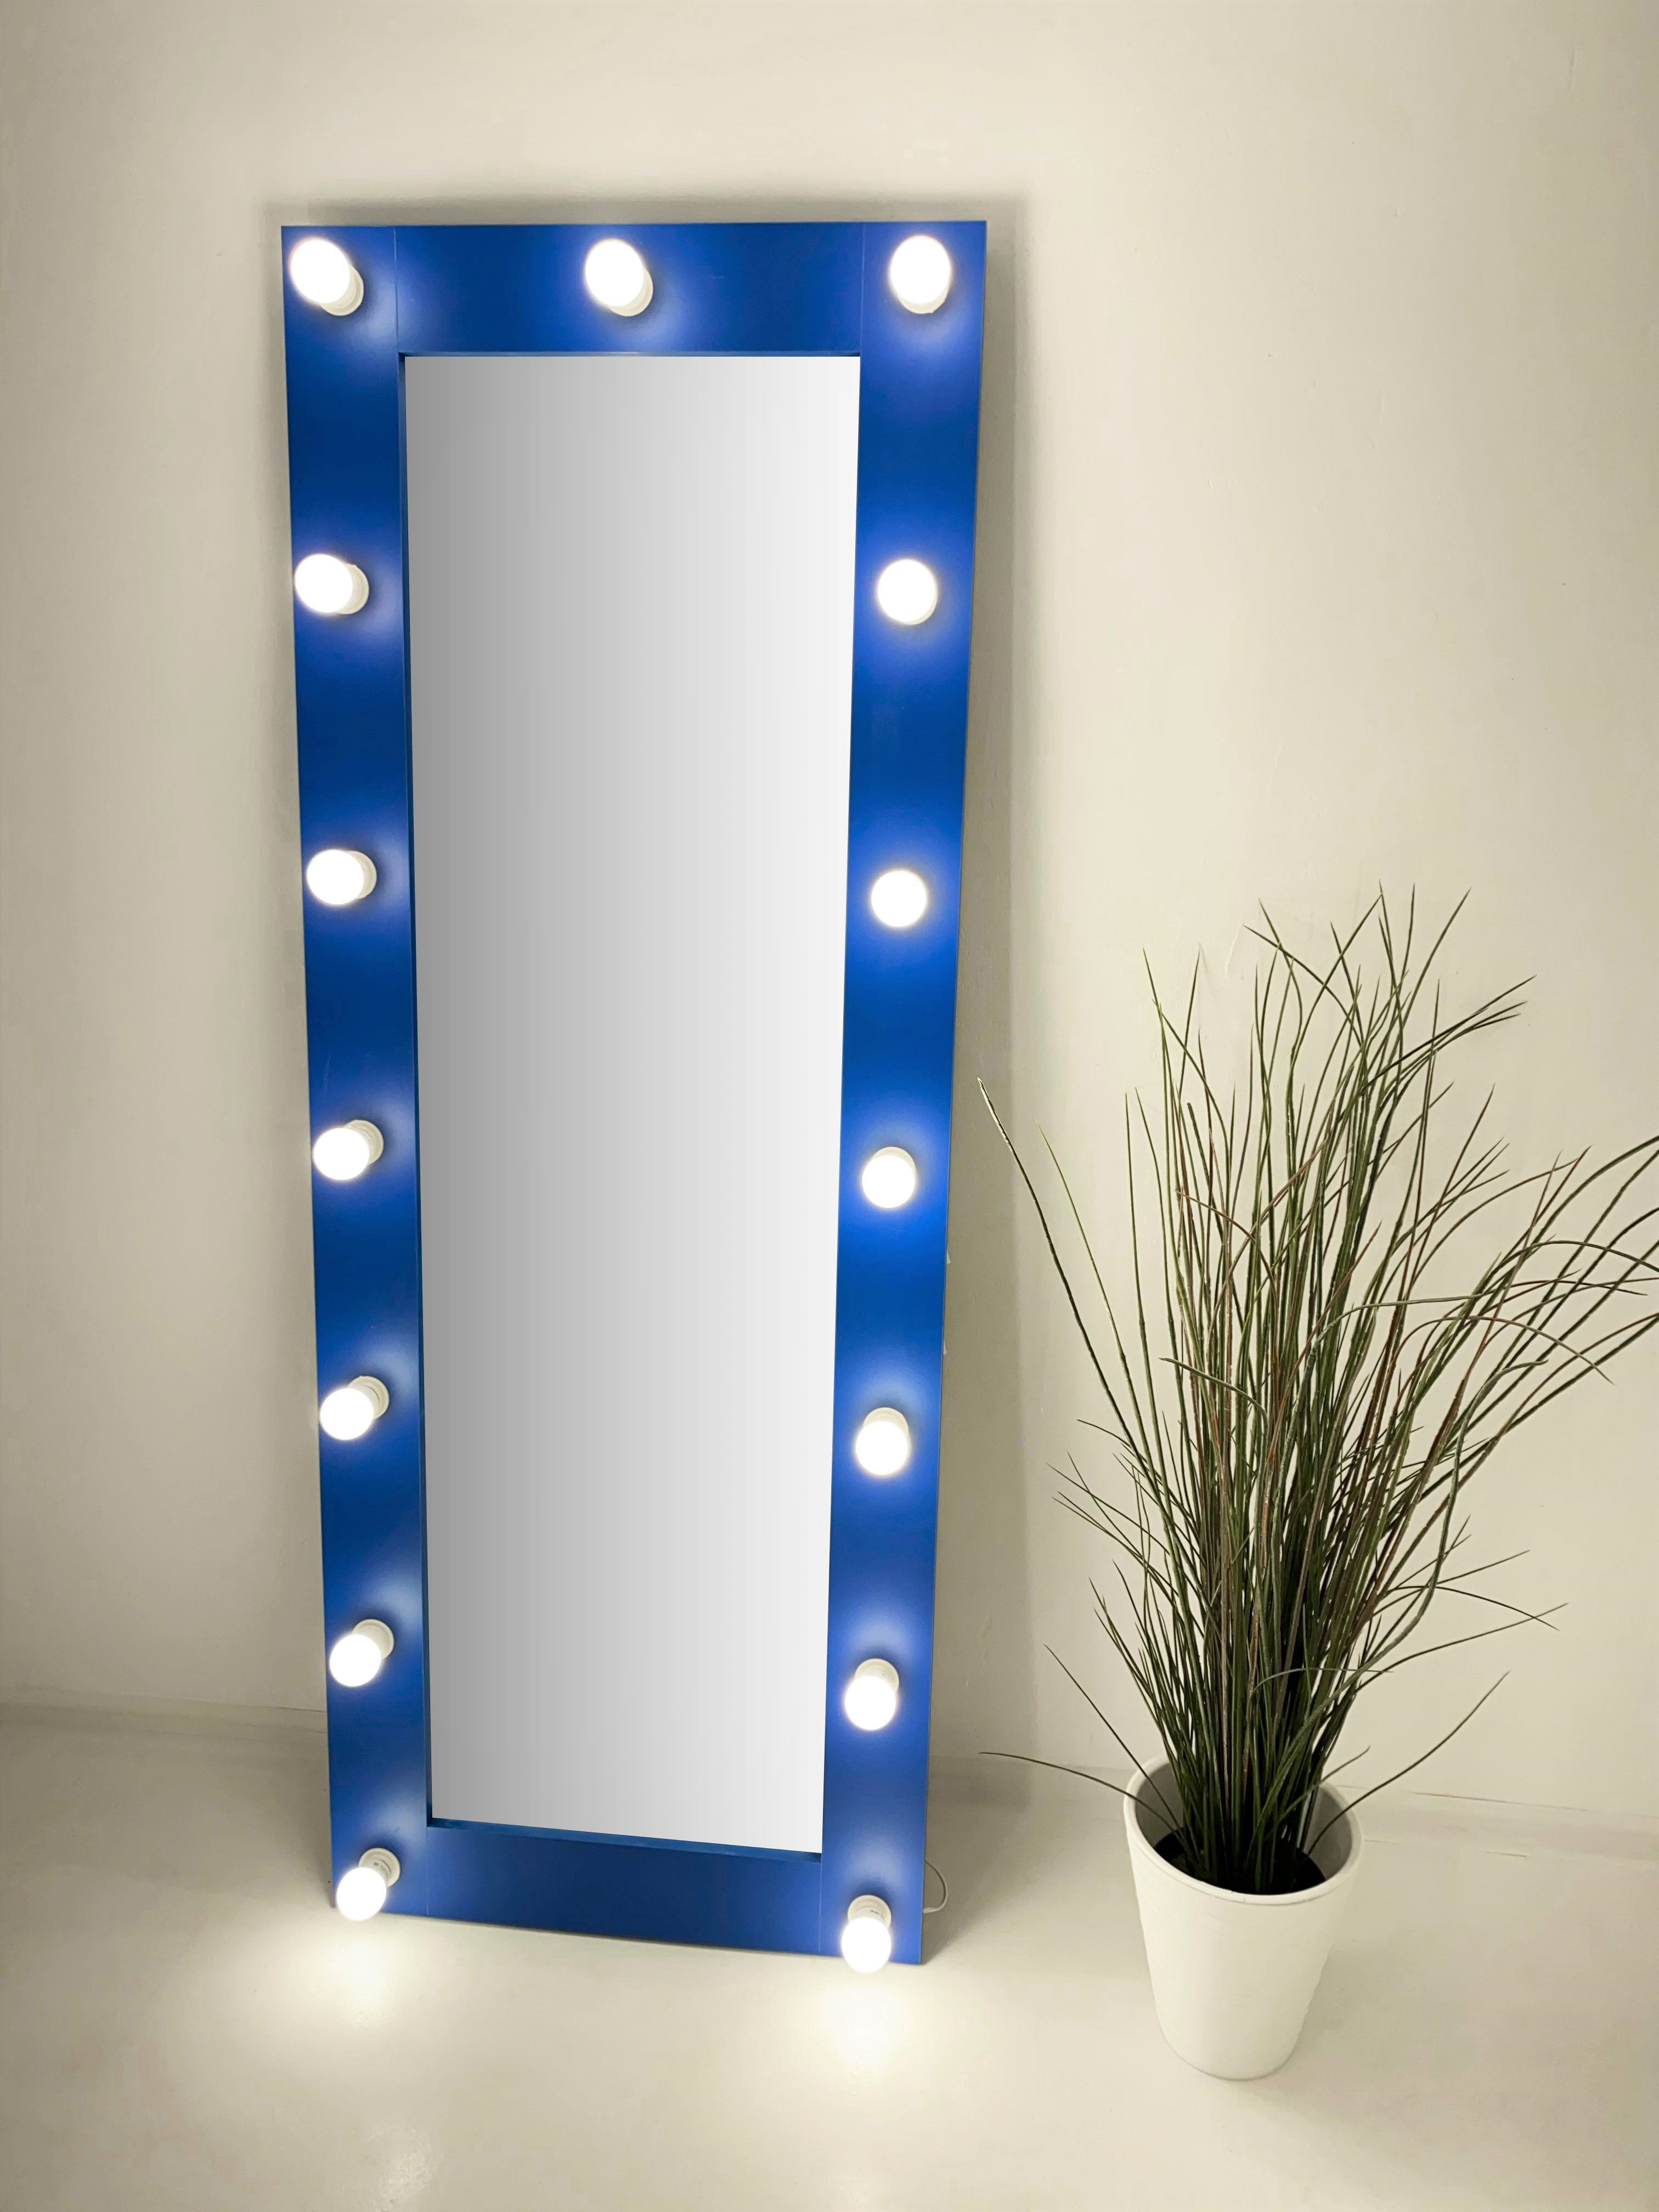 90911025 Гримерное зеркало 160x60 см с лампочками Синий STLM-0420482 BEAUTYUP